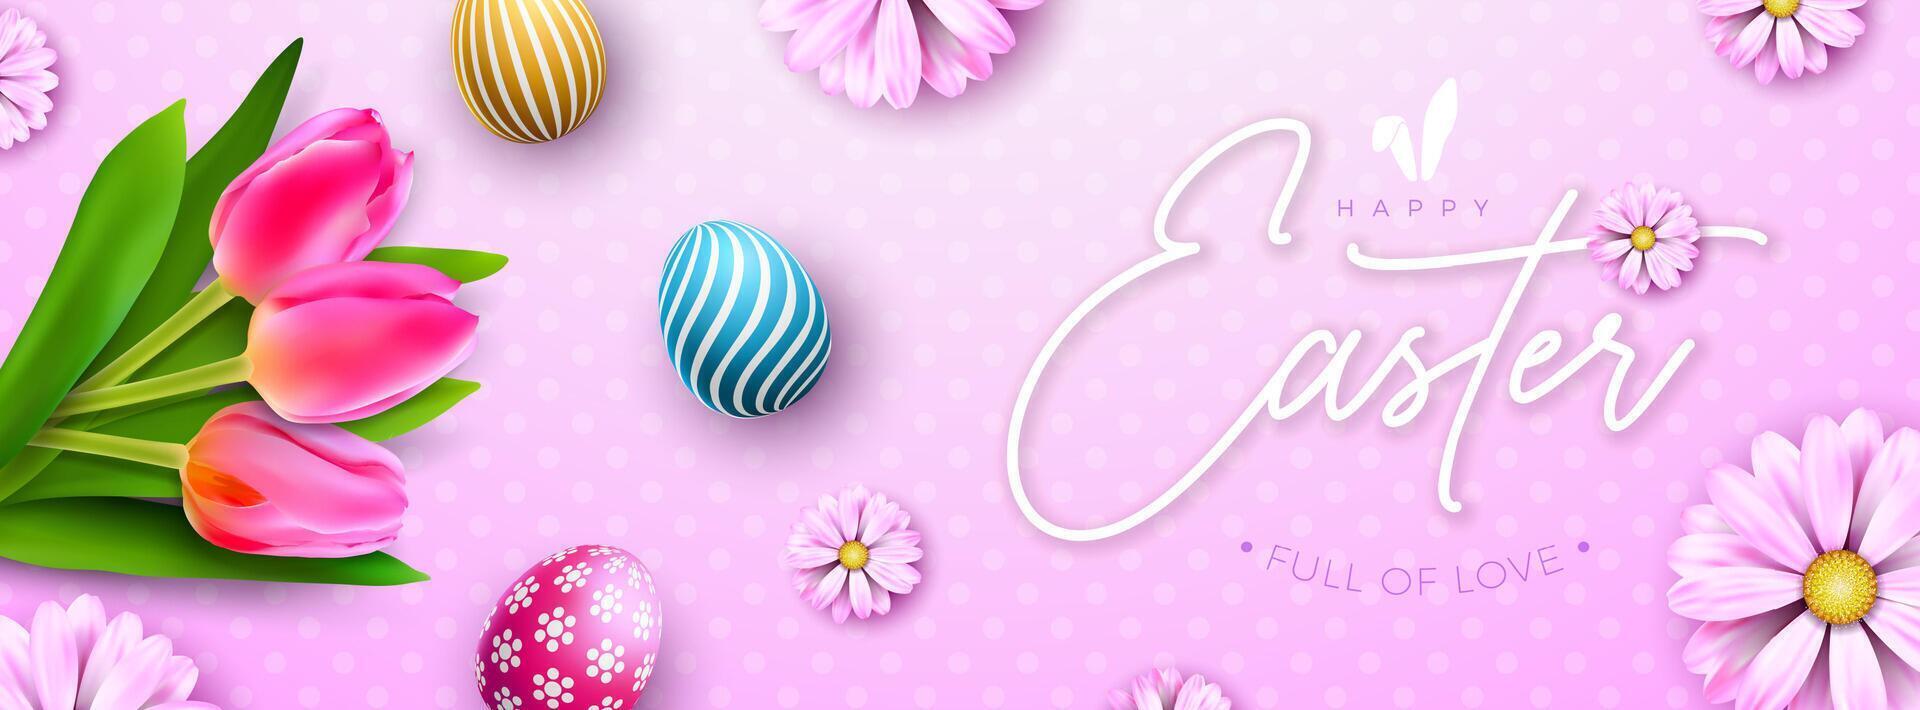 glücklich Ostern Urlaub Design mit bunt gemalt Ei und Frühling Tulpe Blume auf Rosa Hintergrund. International religiös Vektor Feier Banner Illustration mit Typografie Beschriftung zum Gruß